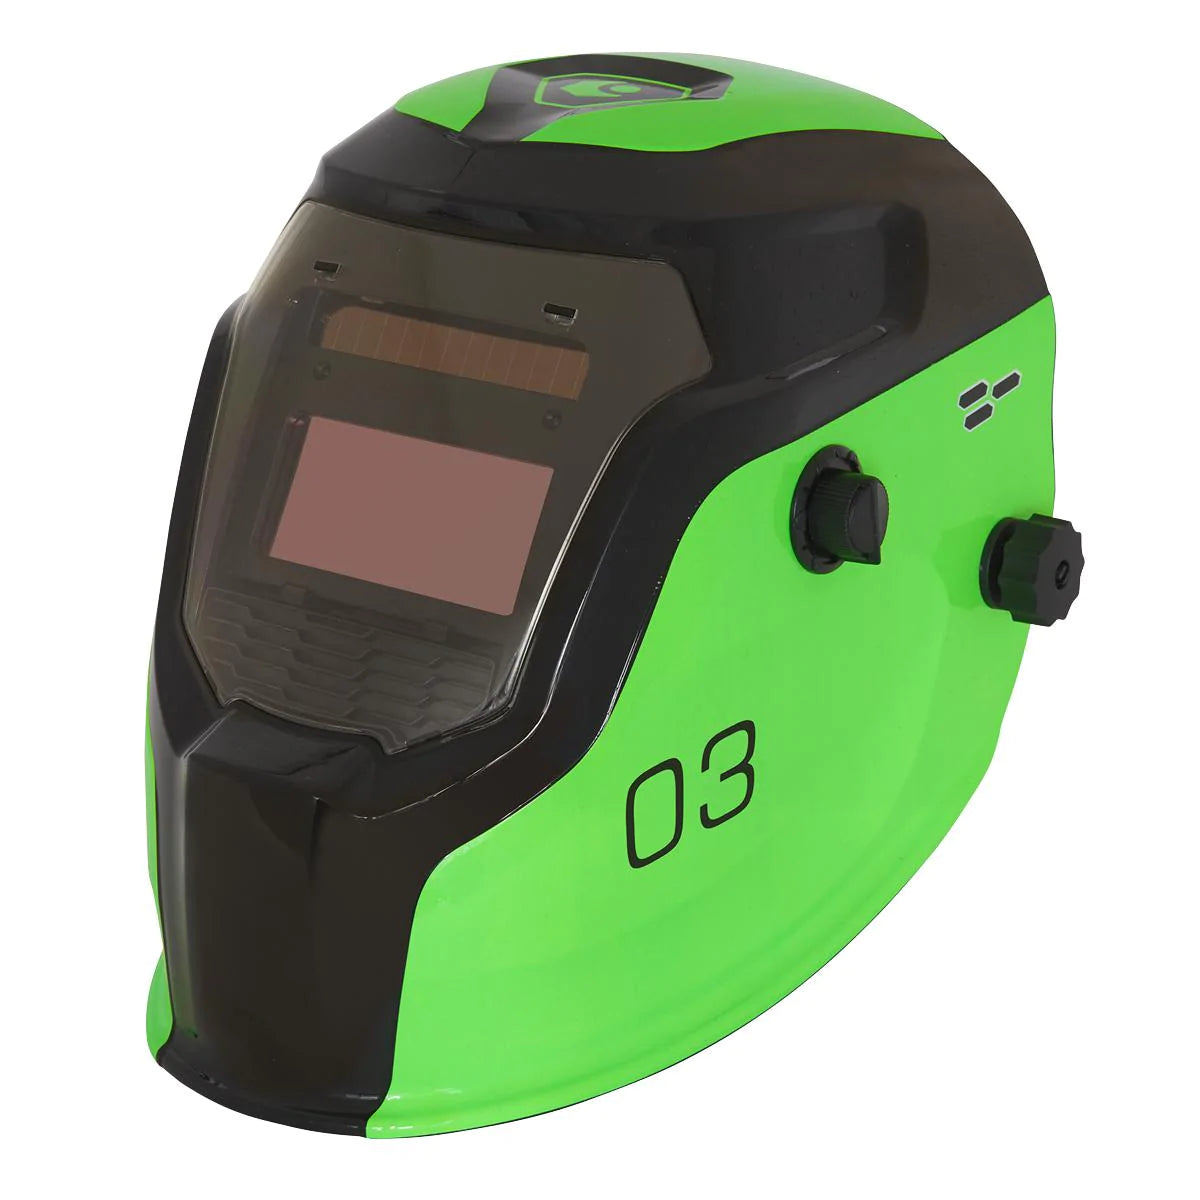 Auto Darkening Welding Helmet - Shade 9-13 - Green